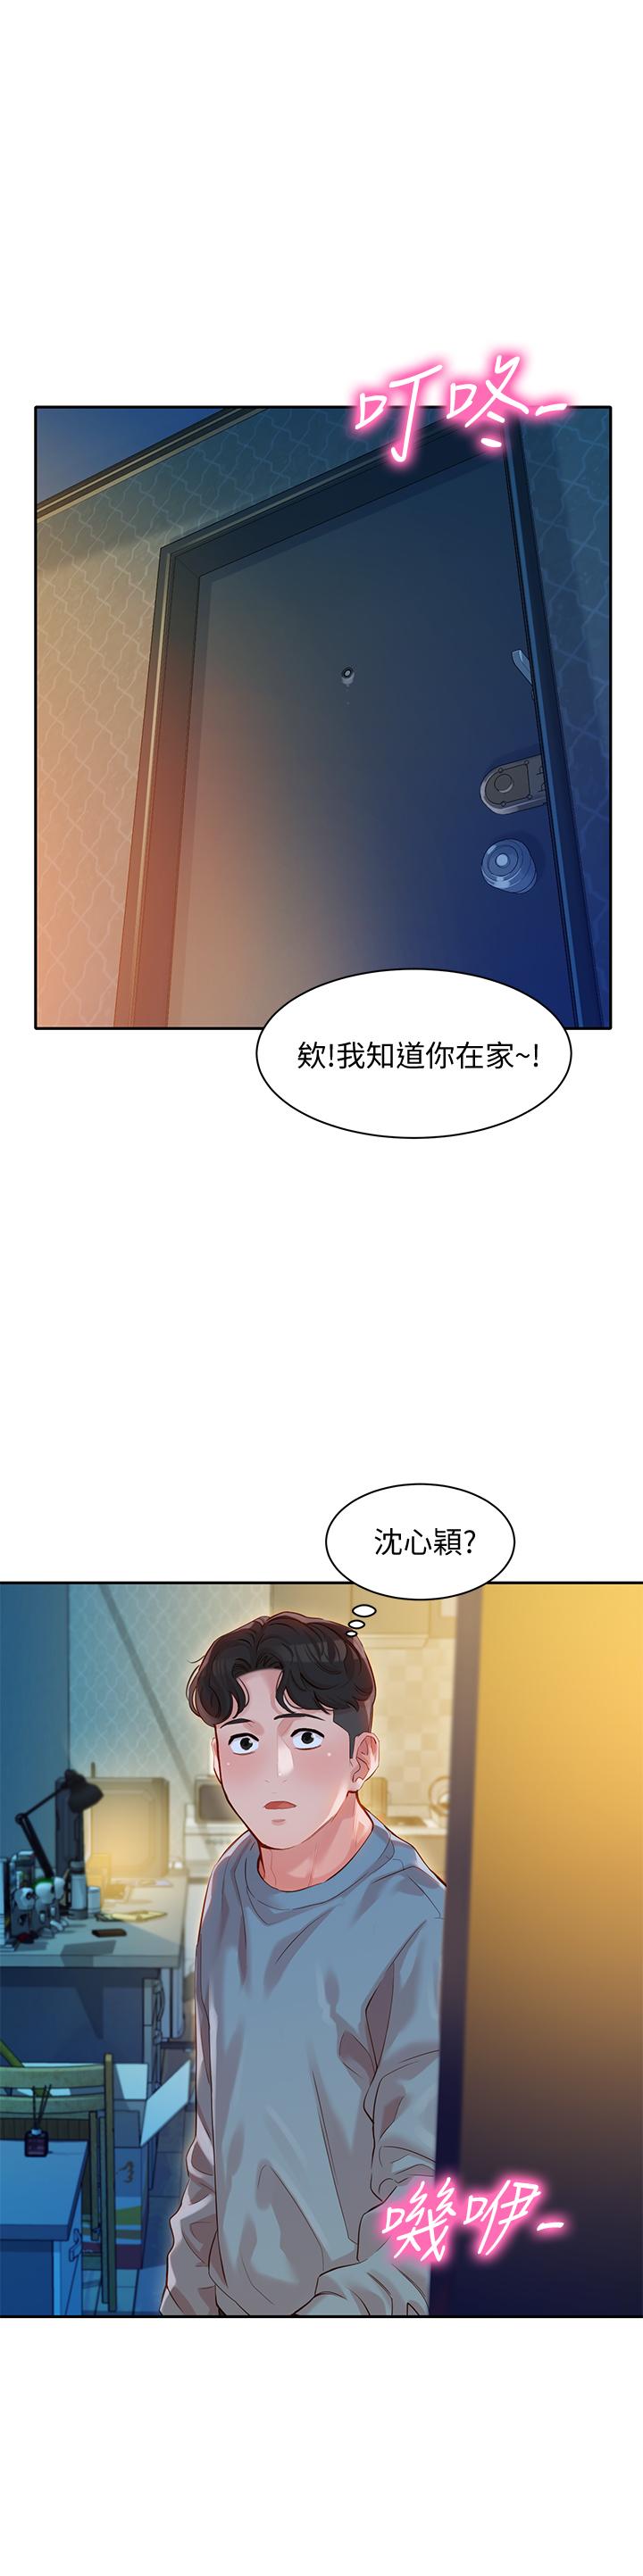 韩国污漫画 女神寫真 第14话-在两人之间流动的微妙情感 1